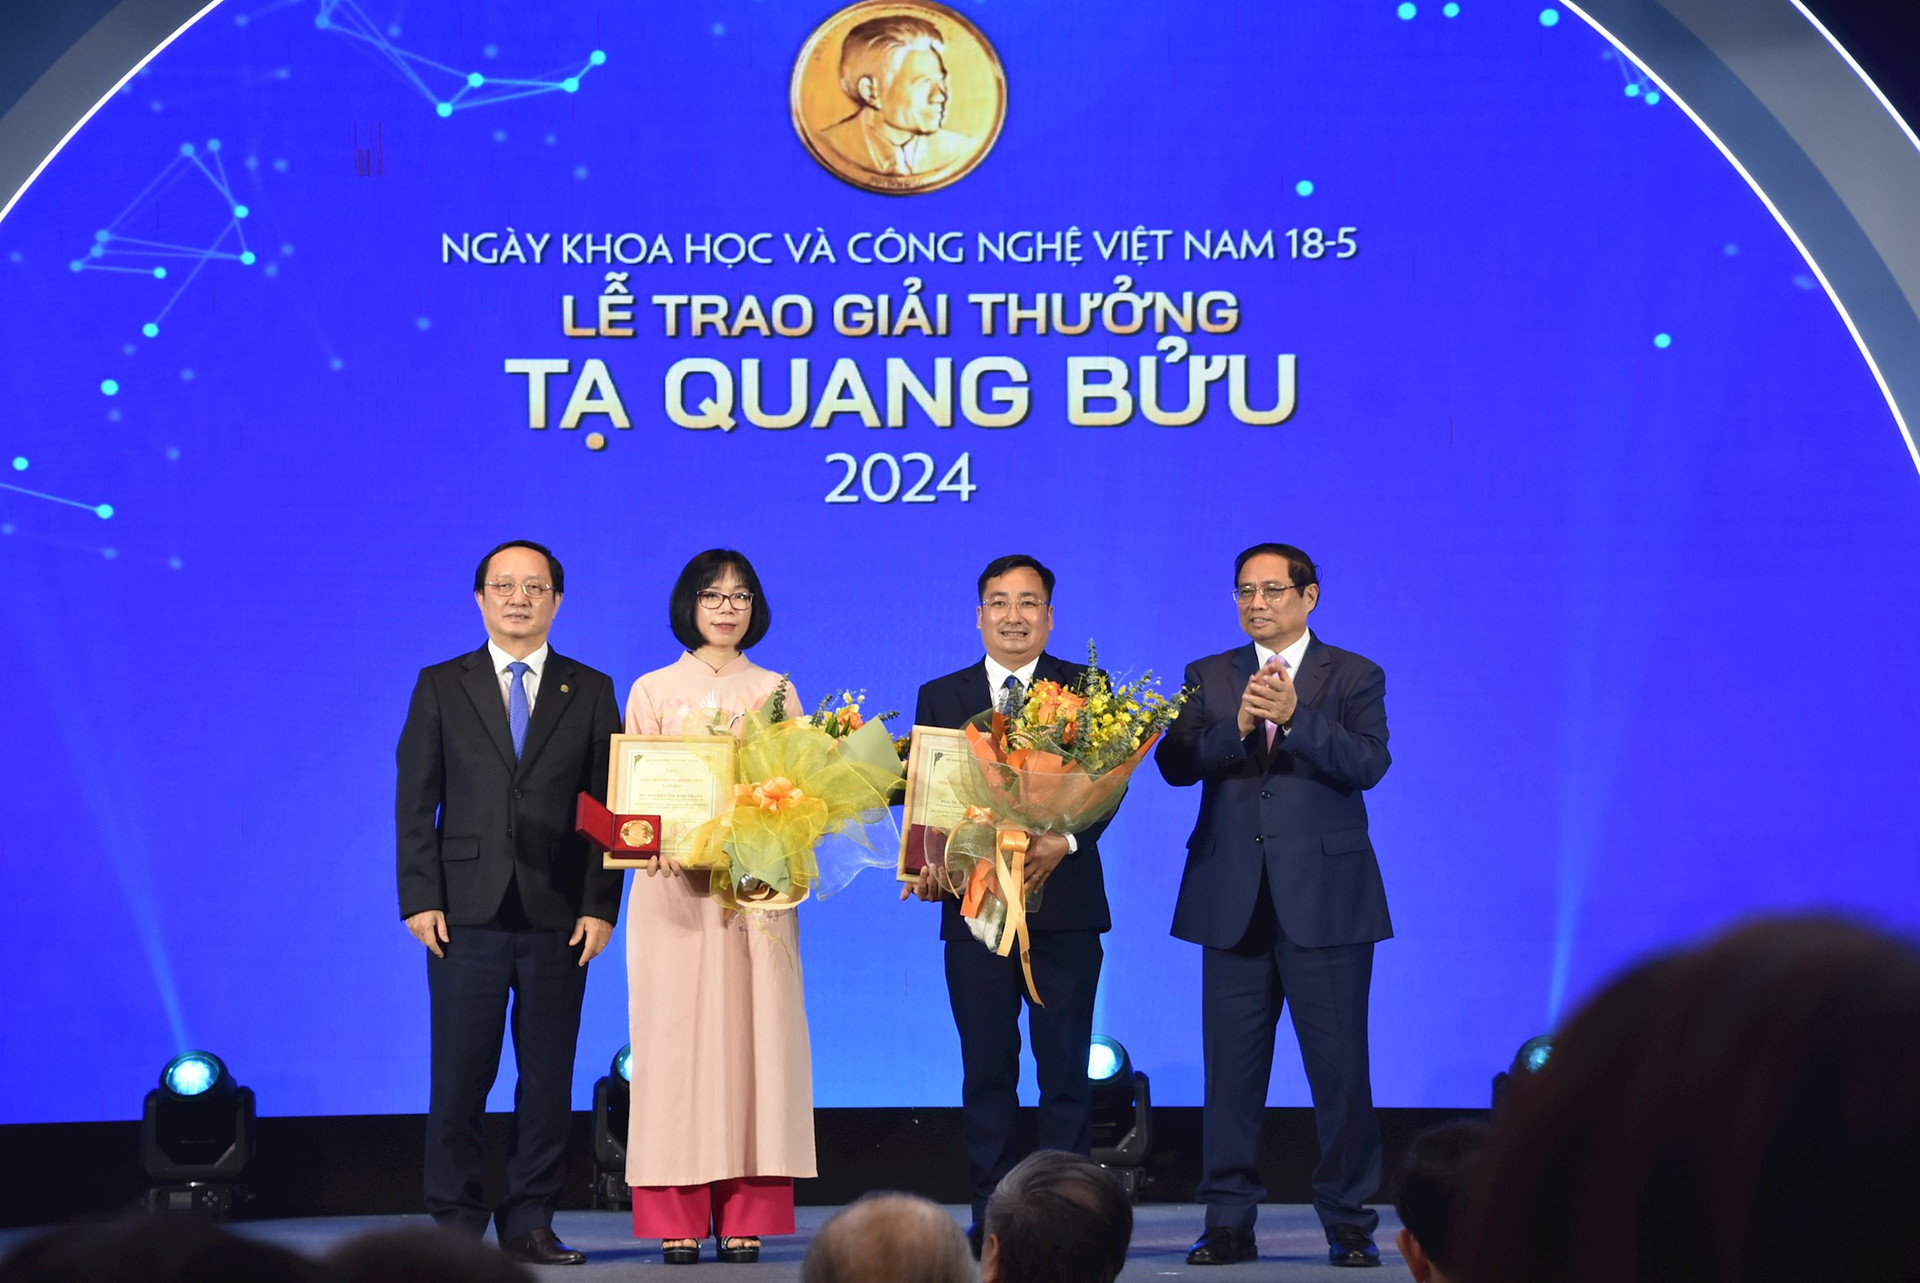 TS. Nguyễn Thị Kim Thanh – Viện Vật lý, Viện Hàn lâm Khoa học và Công nghệ Việt Nam được trao tặng Giải thưởng Tạ Quang Bửu năm 2024